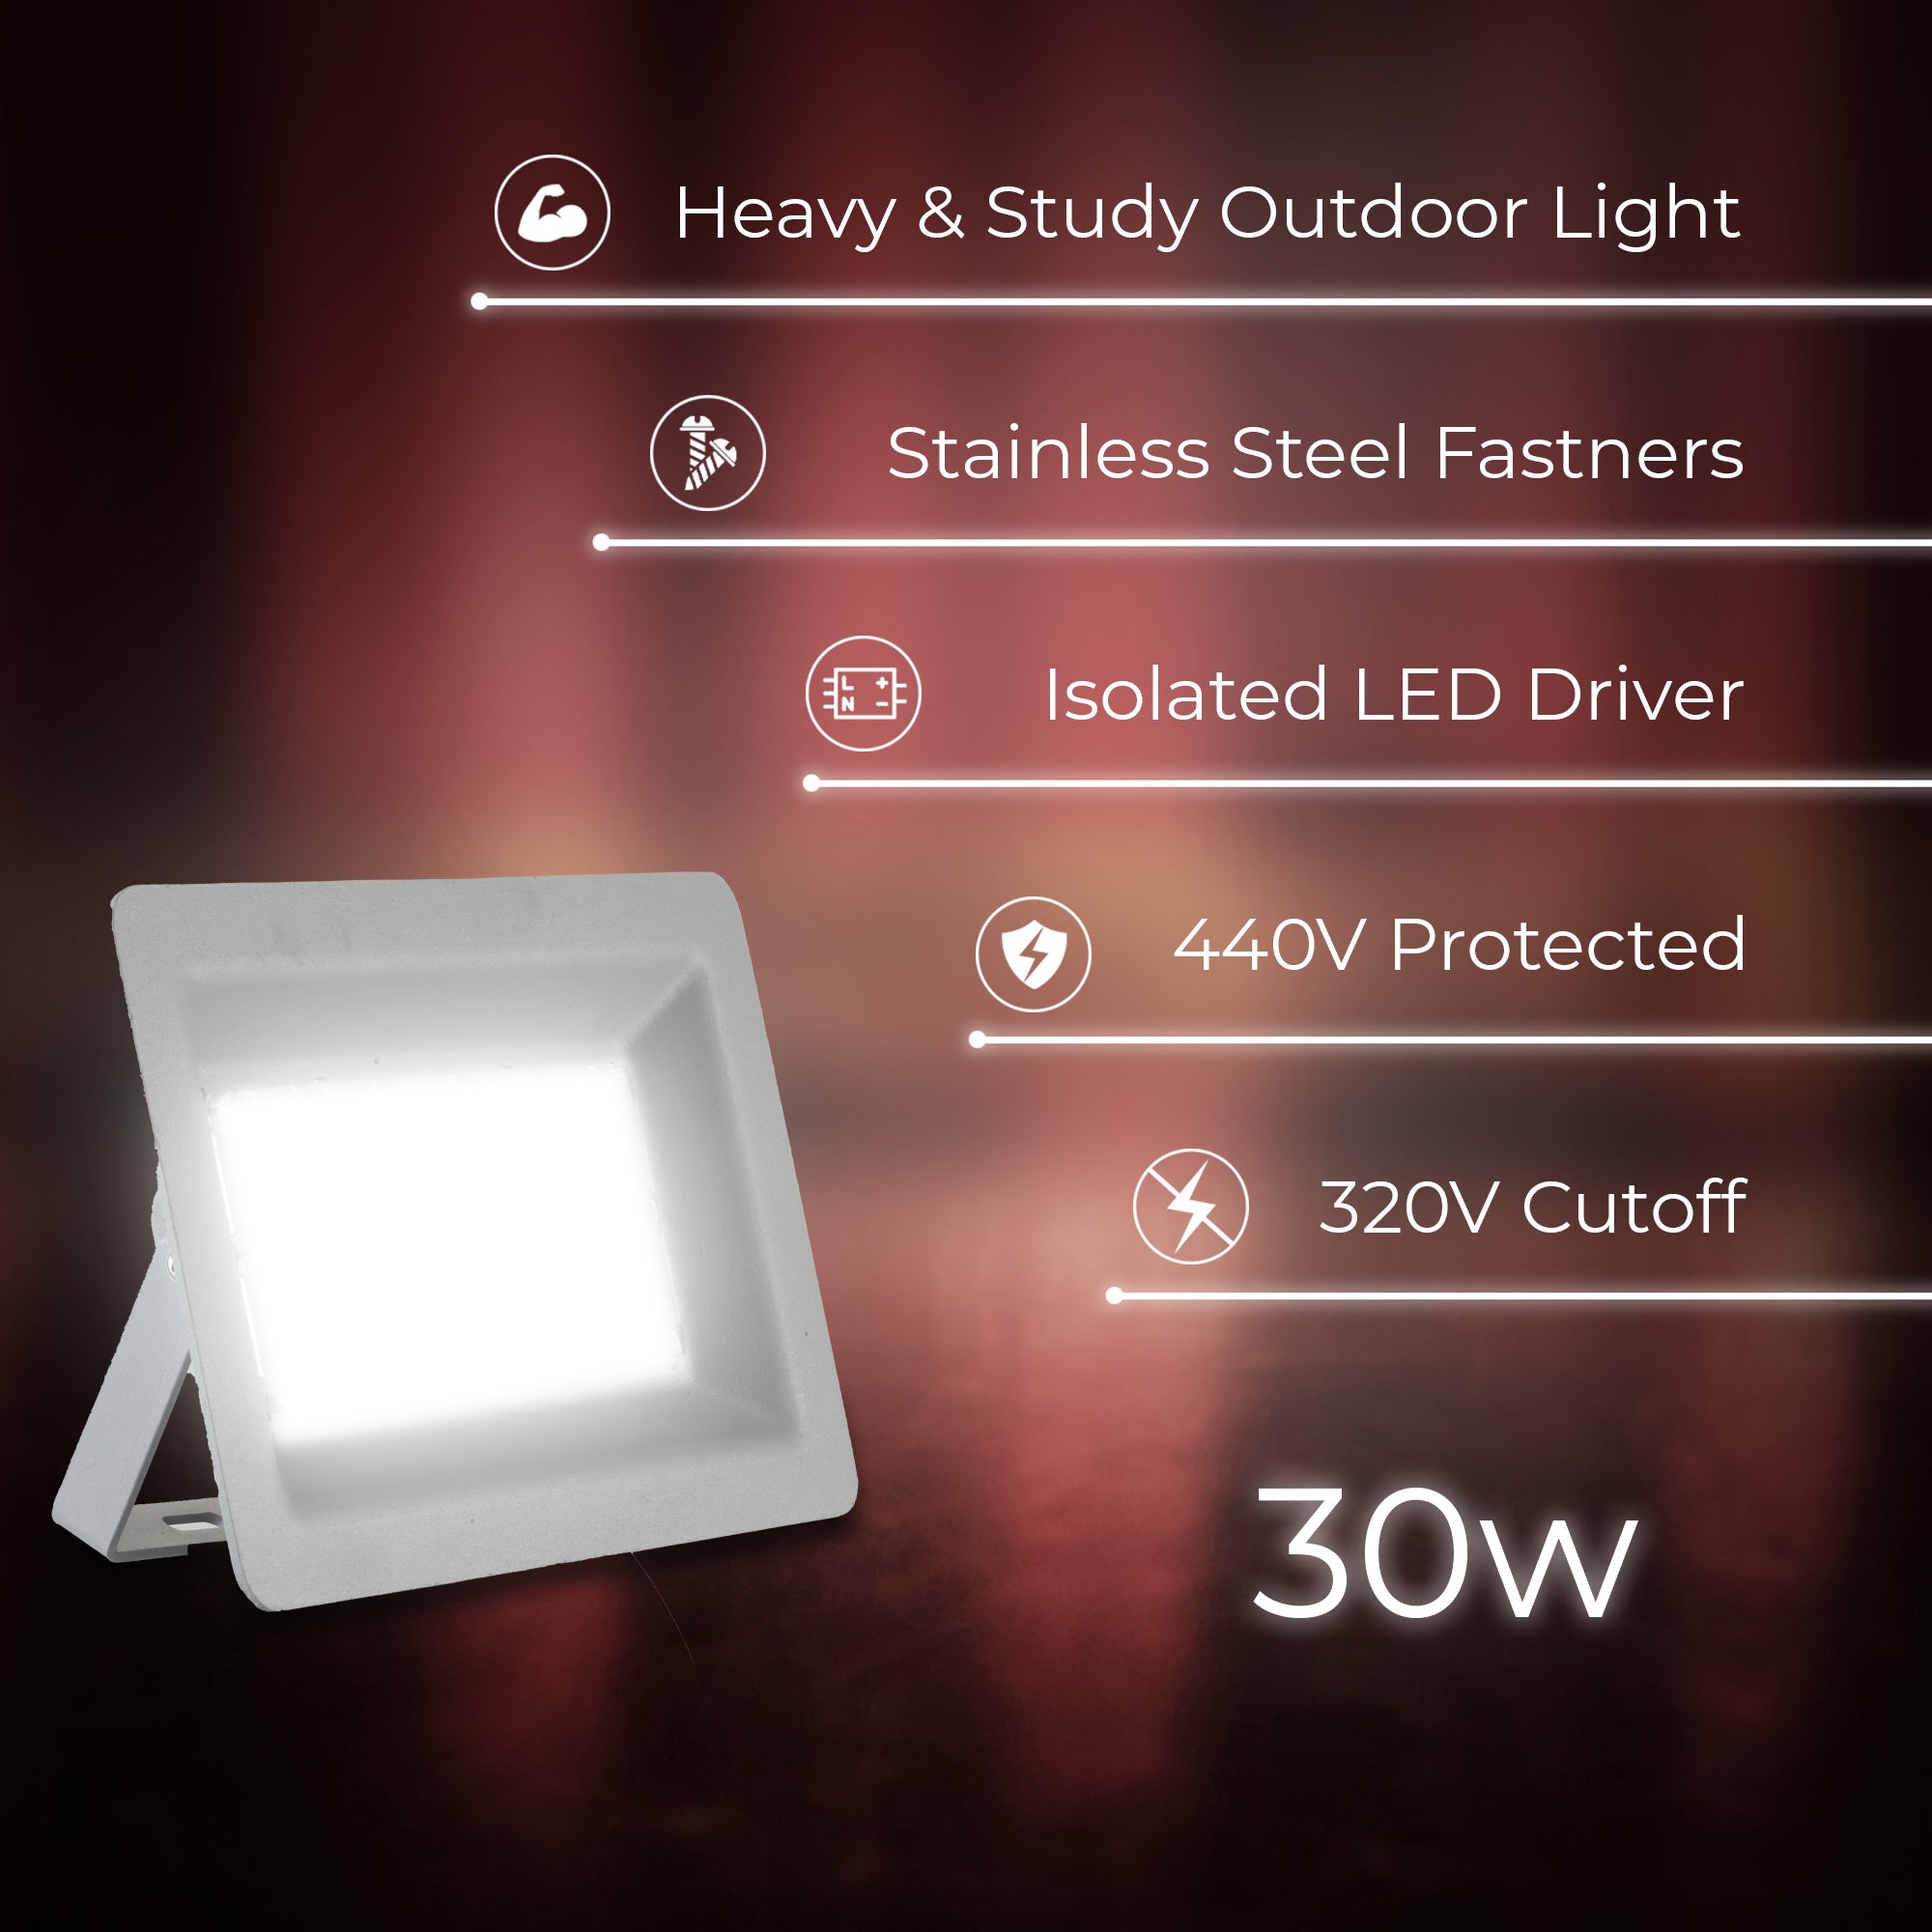 Specifications of Zeva 30W led flood light #watts_30w